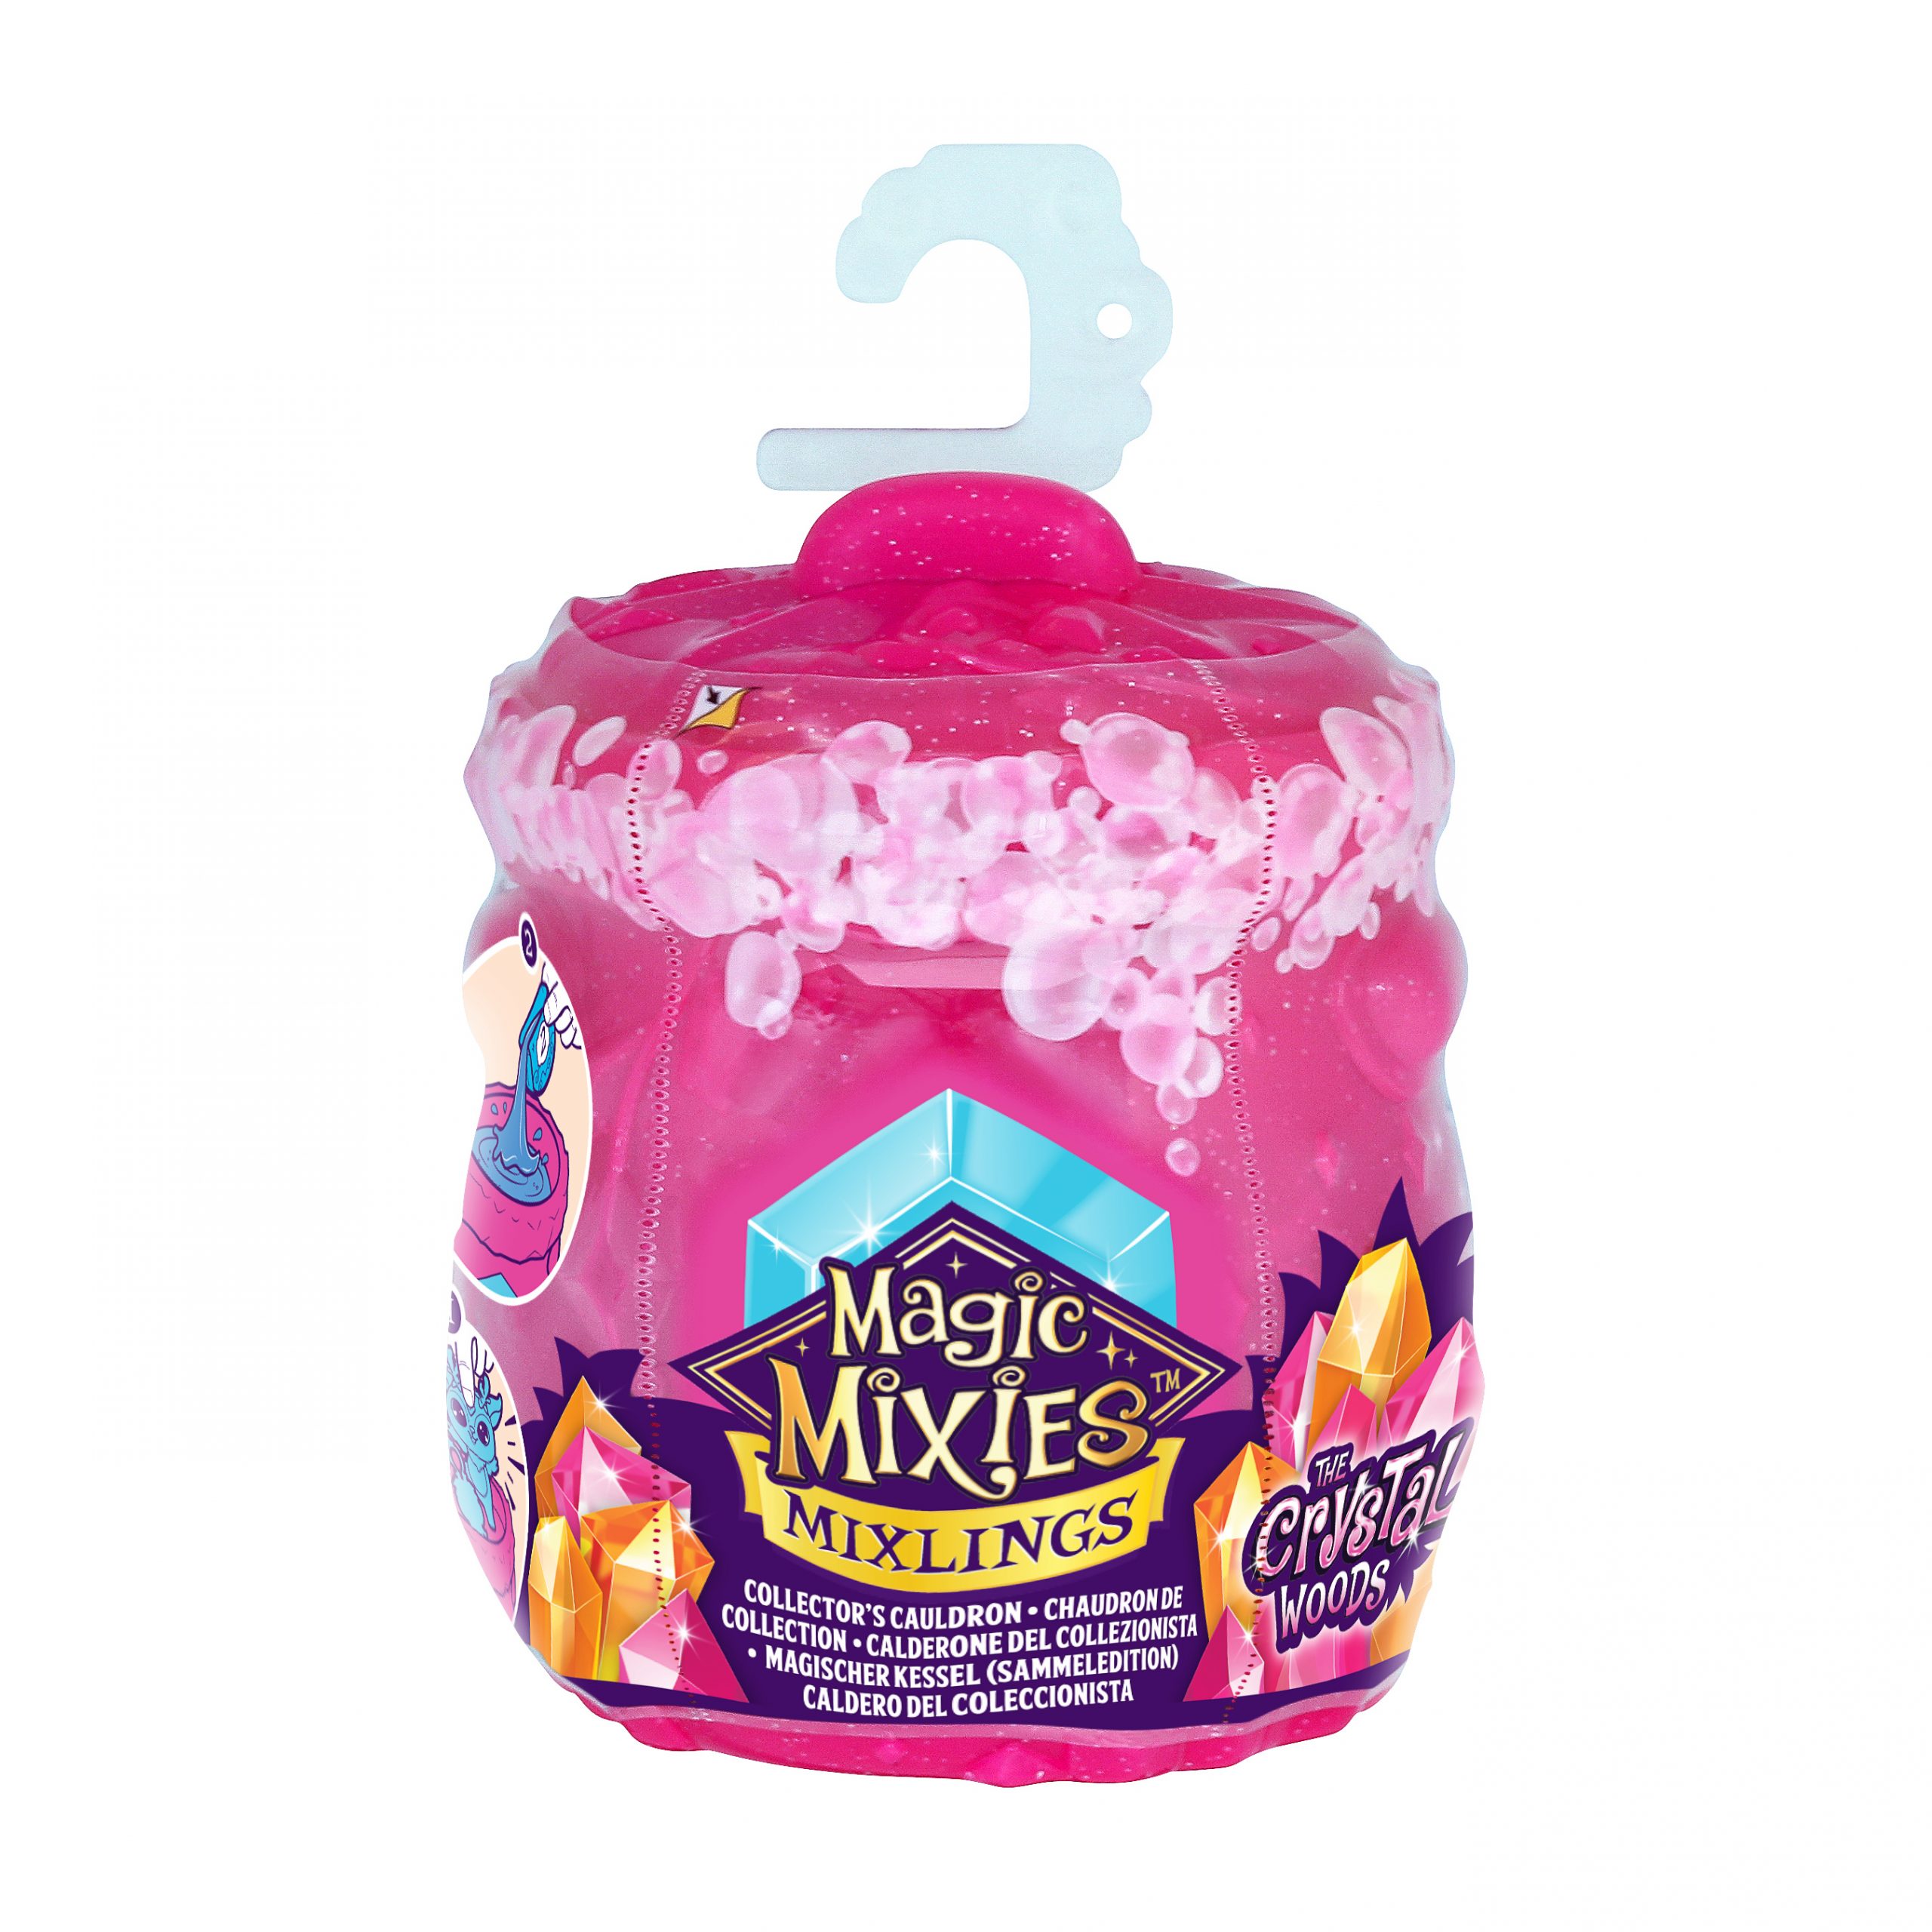 Magic Mixies Mixlings Crystal Woods Mega Pack Series 3 (MG011000)